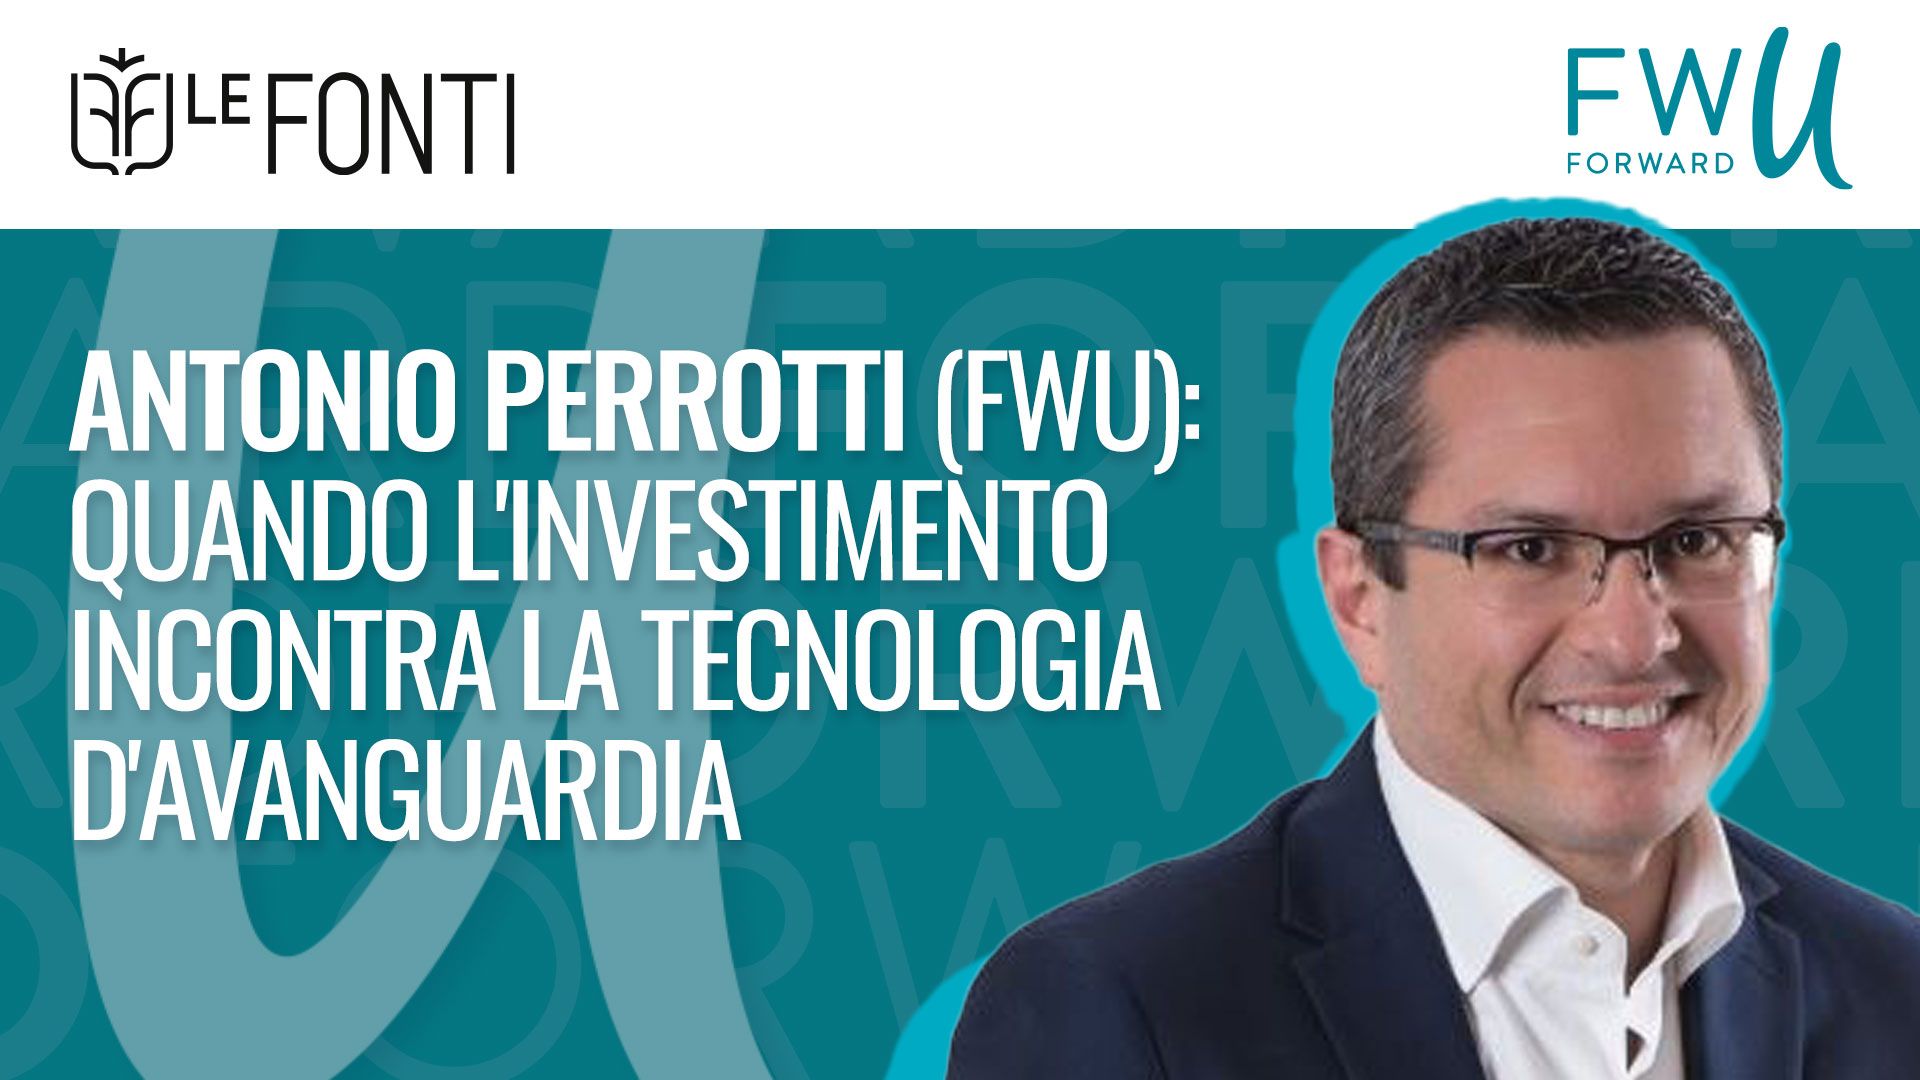 Antonio Perrotti (FWU): quando l’investimento incontra la tecnologia d’avanguardia